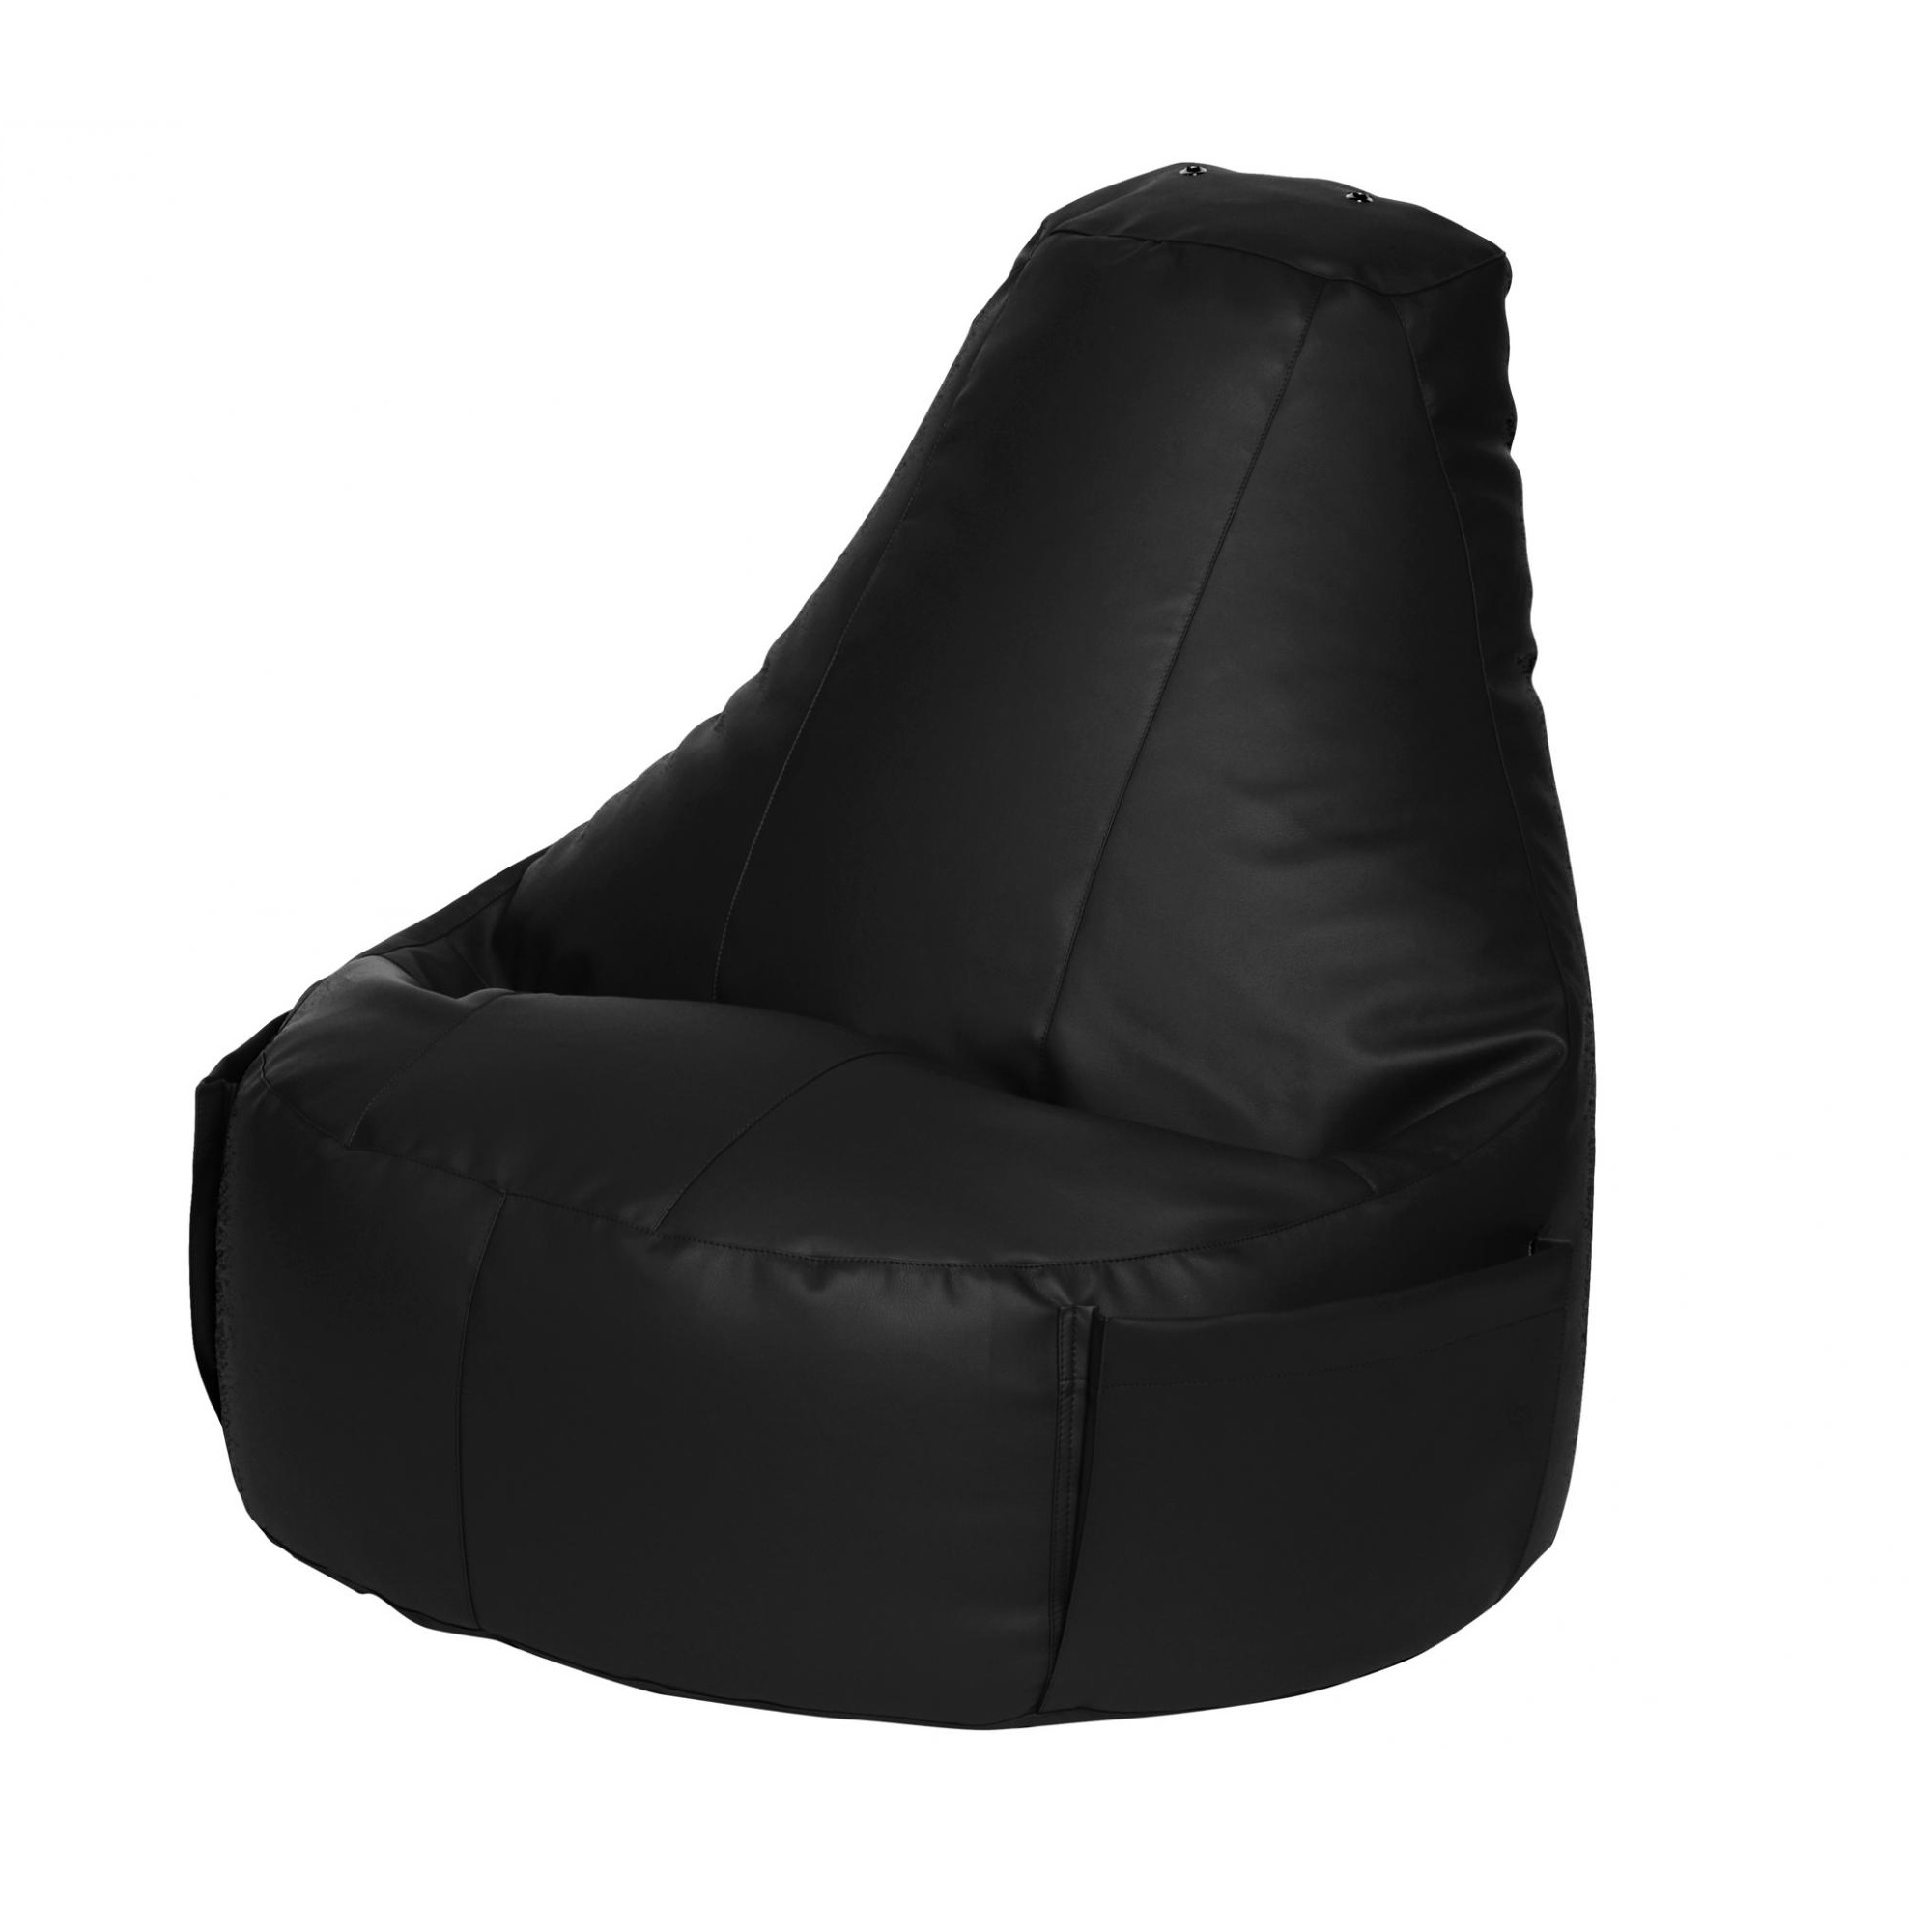 Кресло Dreambag Comfort чёрный экокожа 150x90 см кресло мешок ашли голубая экокожа xl